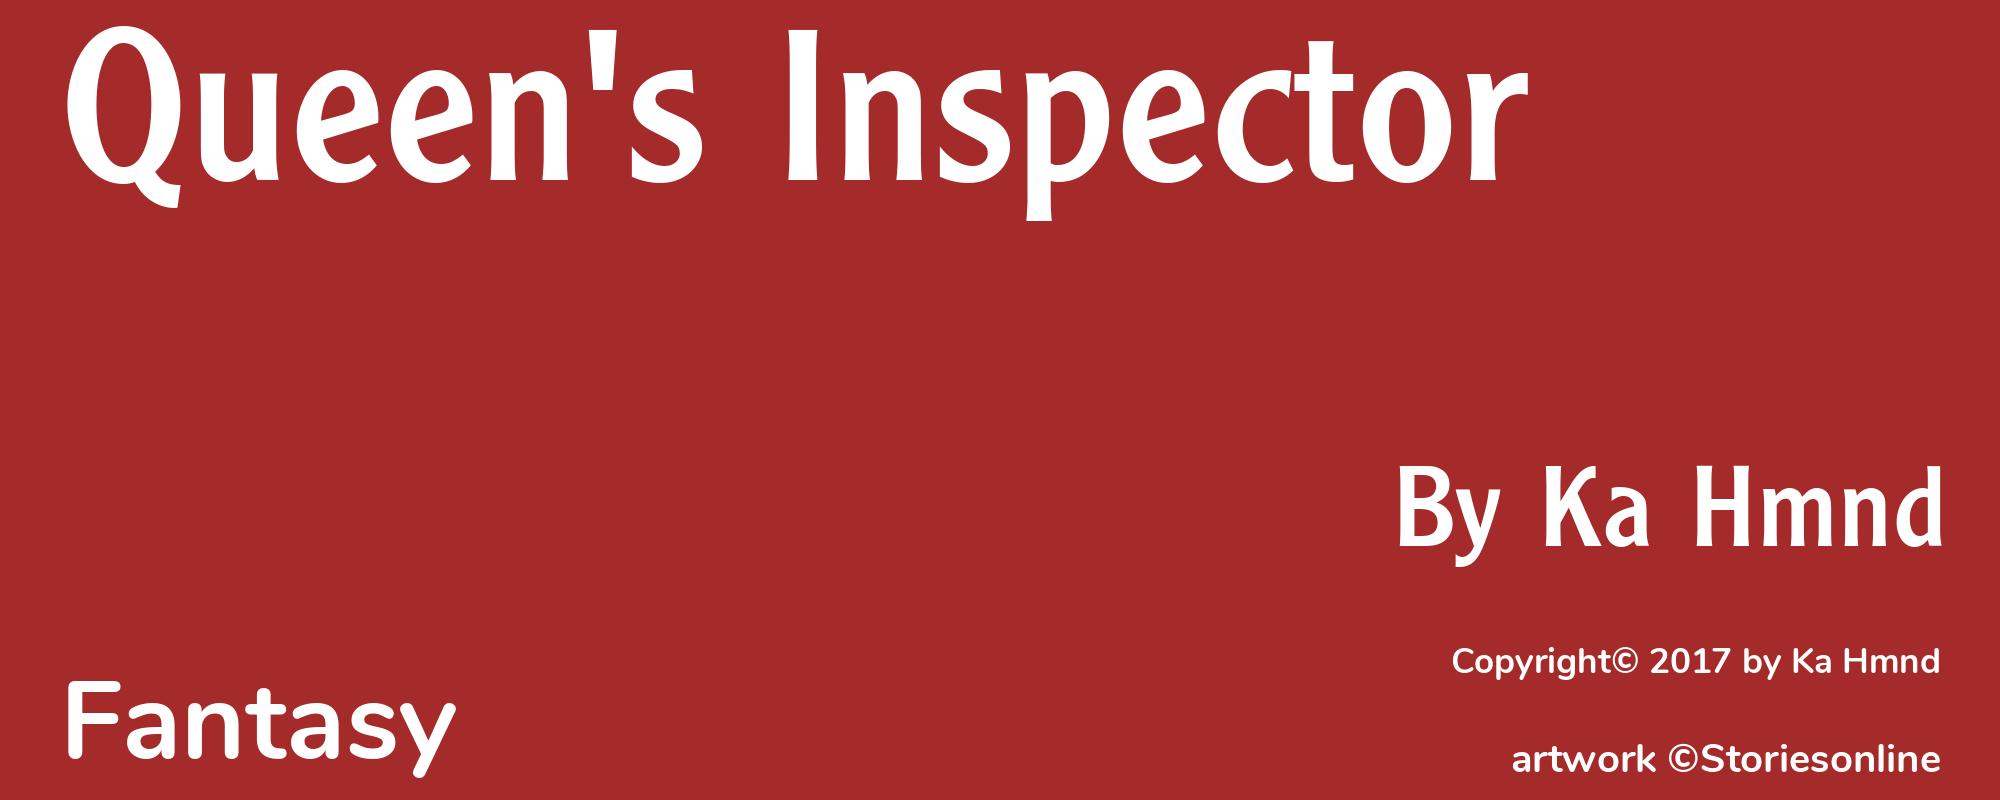 Queen's Inspector - Cover